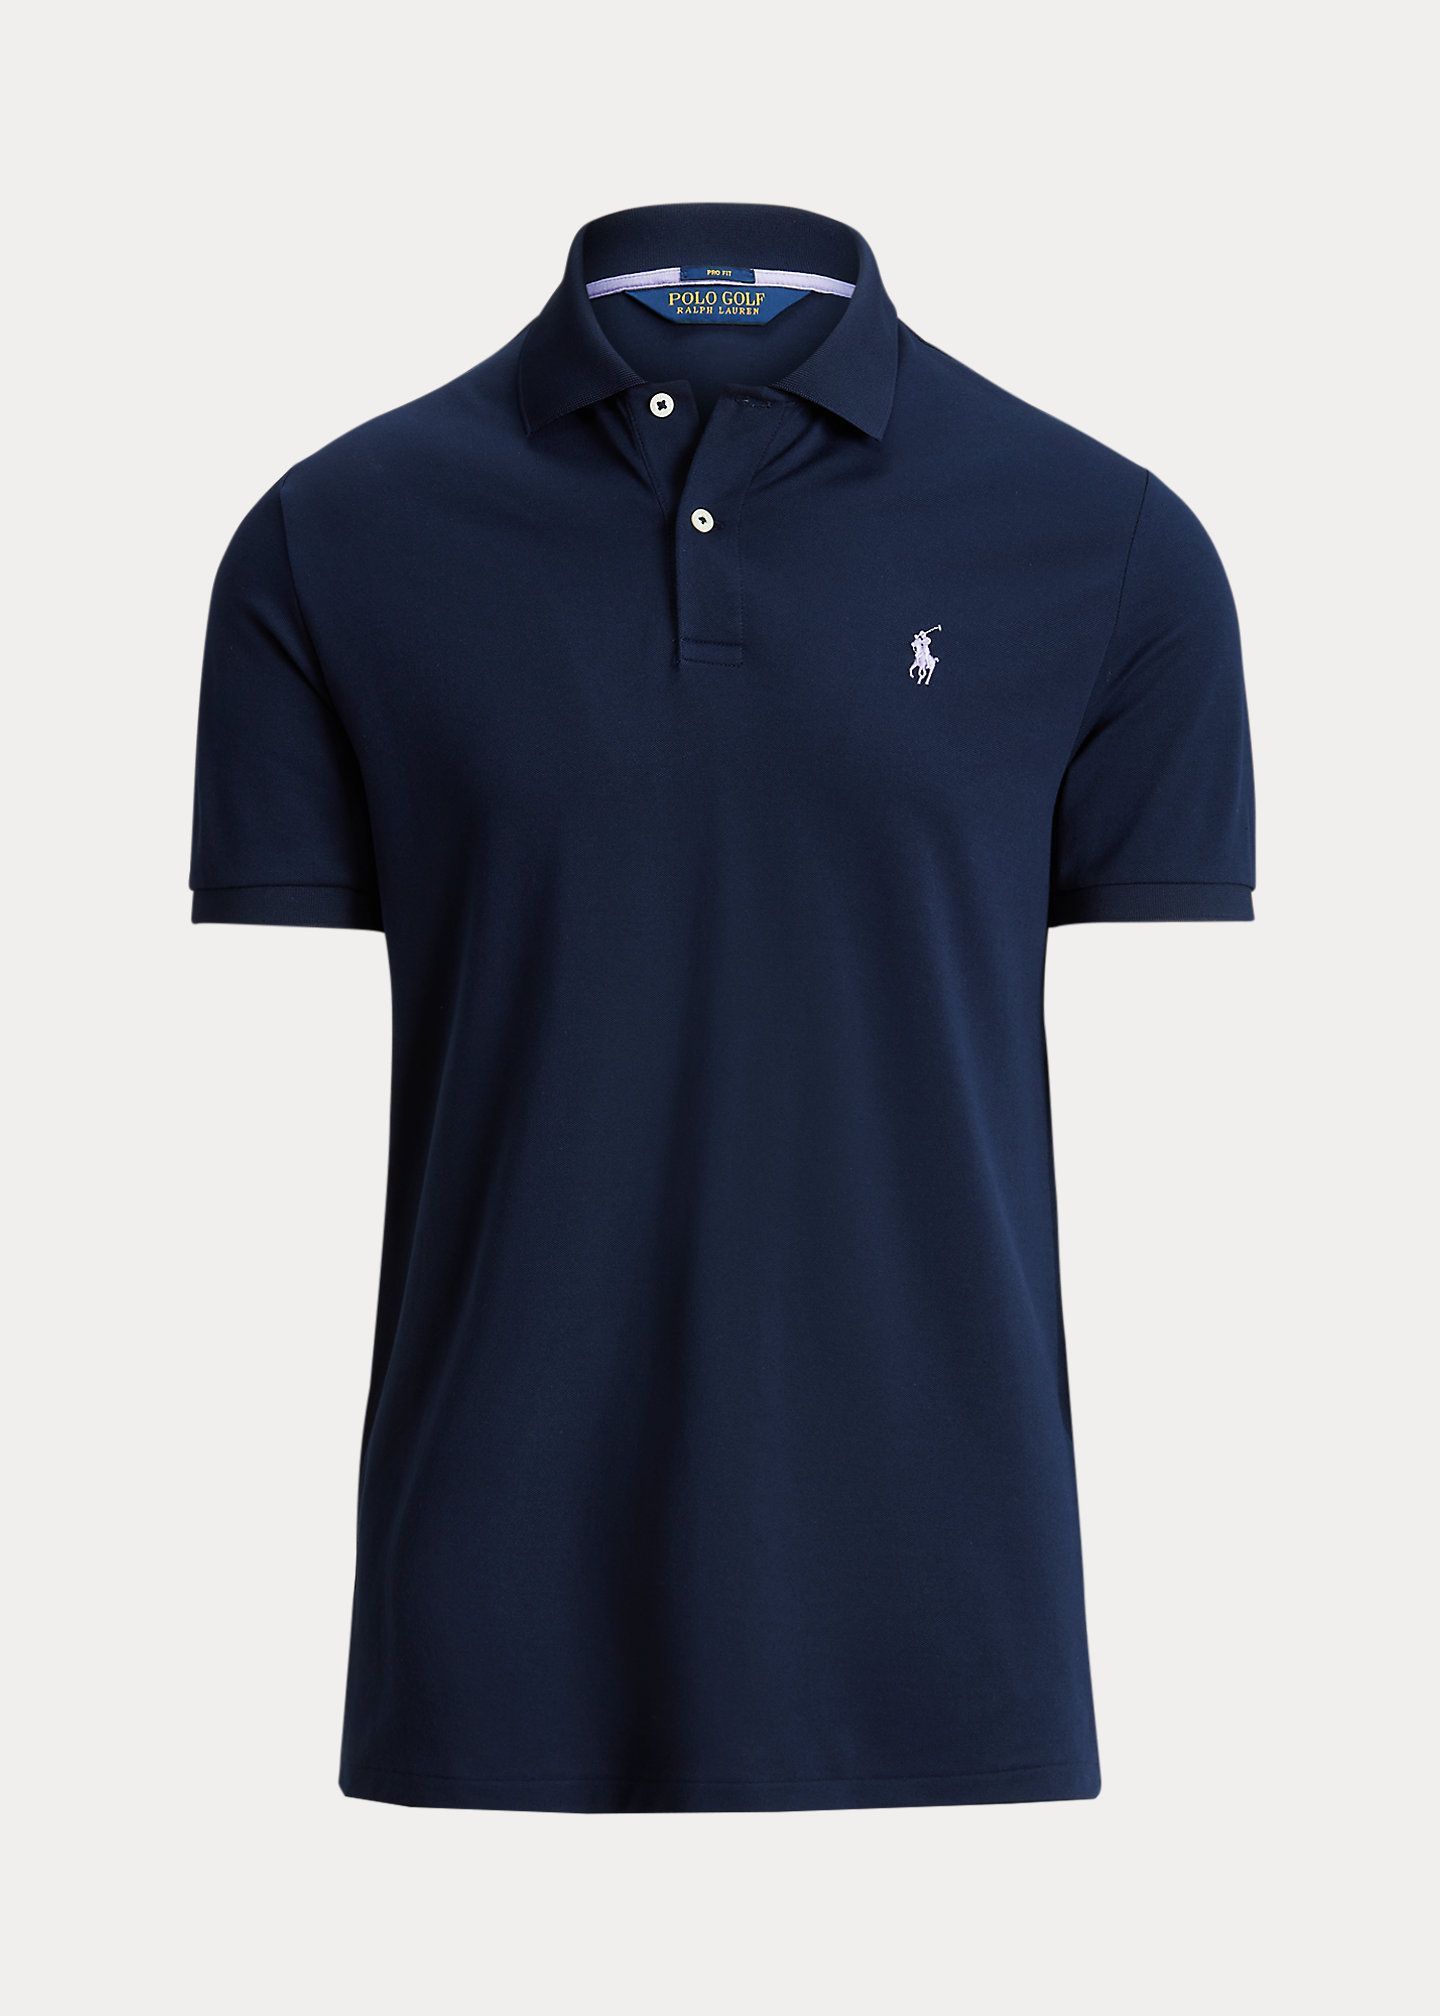 best golf shirt brands